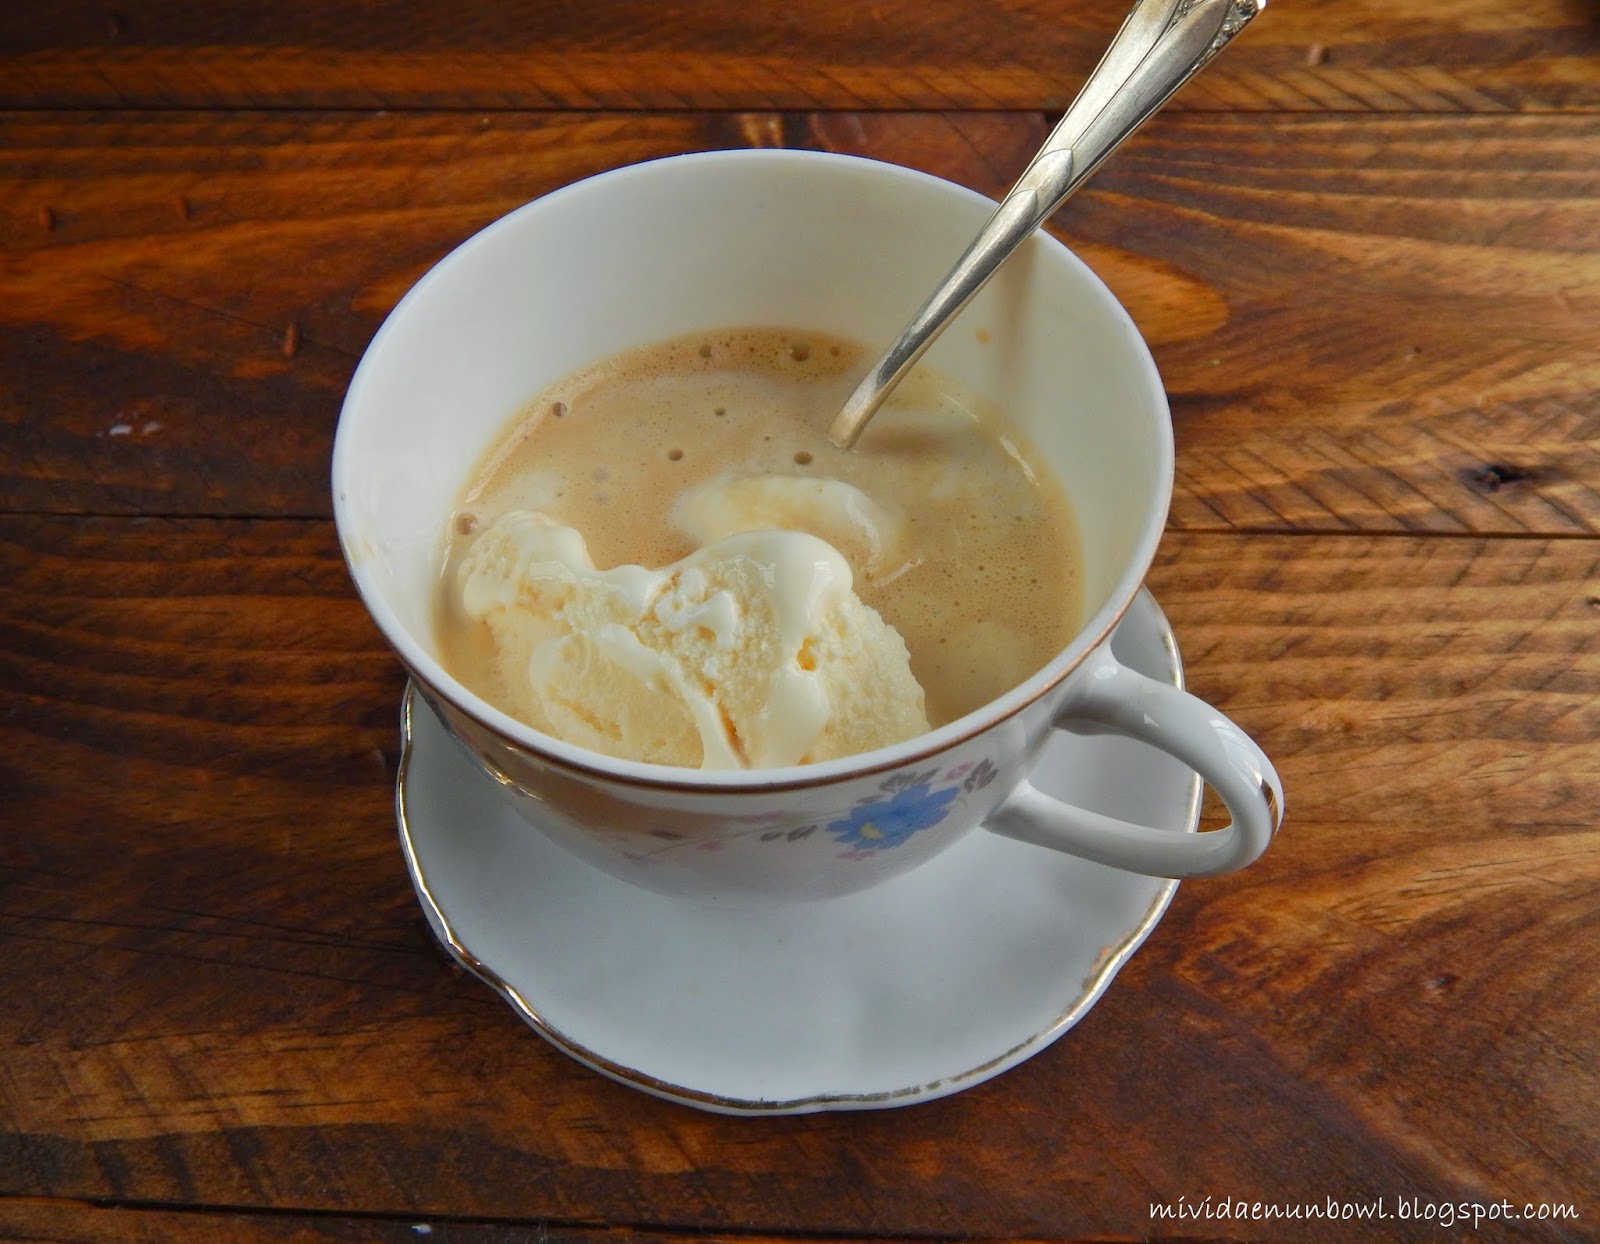 Mi vida en un bowl: El Café Affogato en 3 sencillos pasos